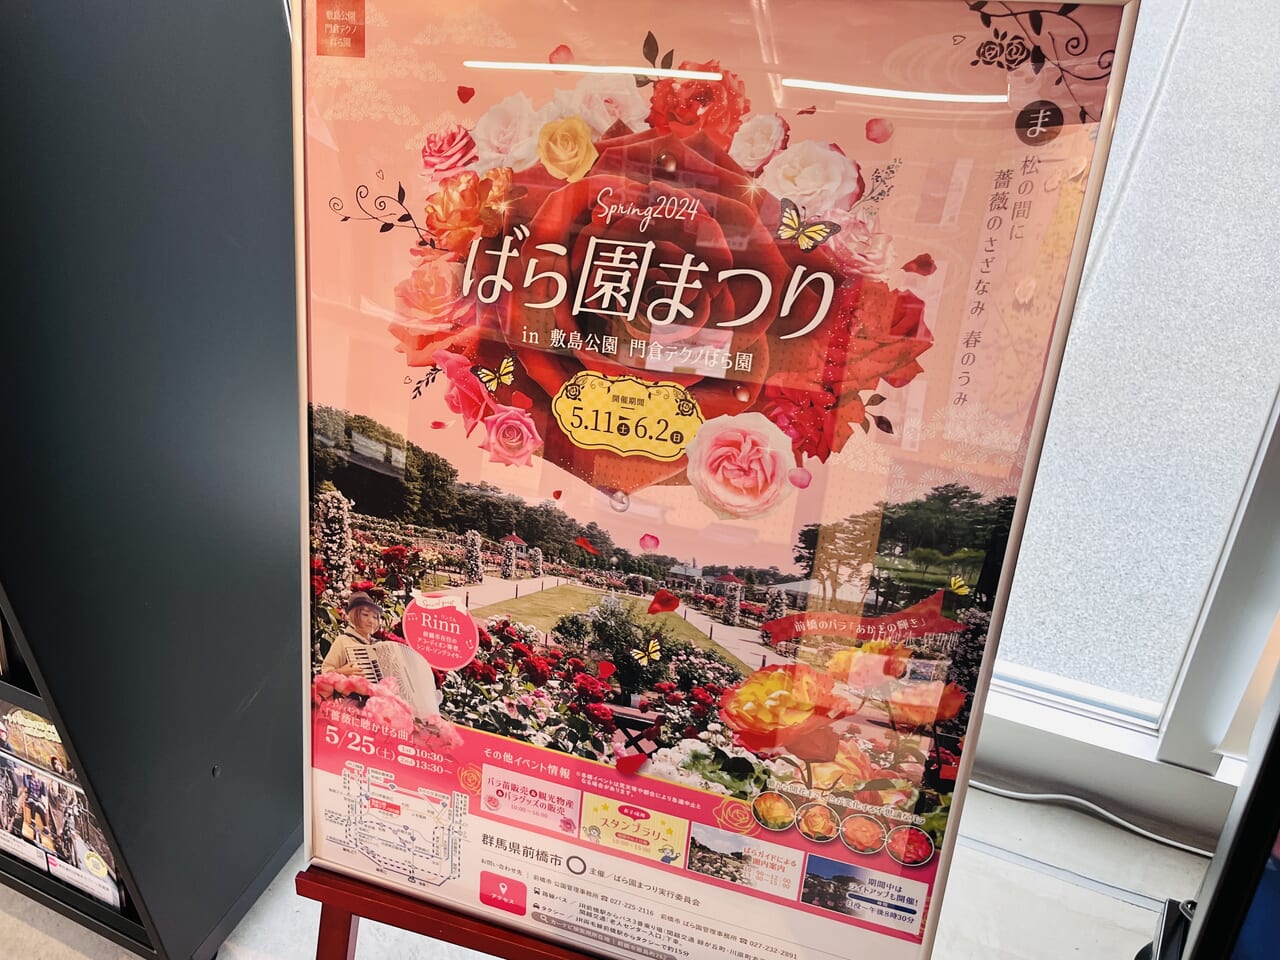 「春のばら園まつり」開催告知のポスター